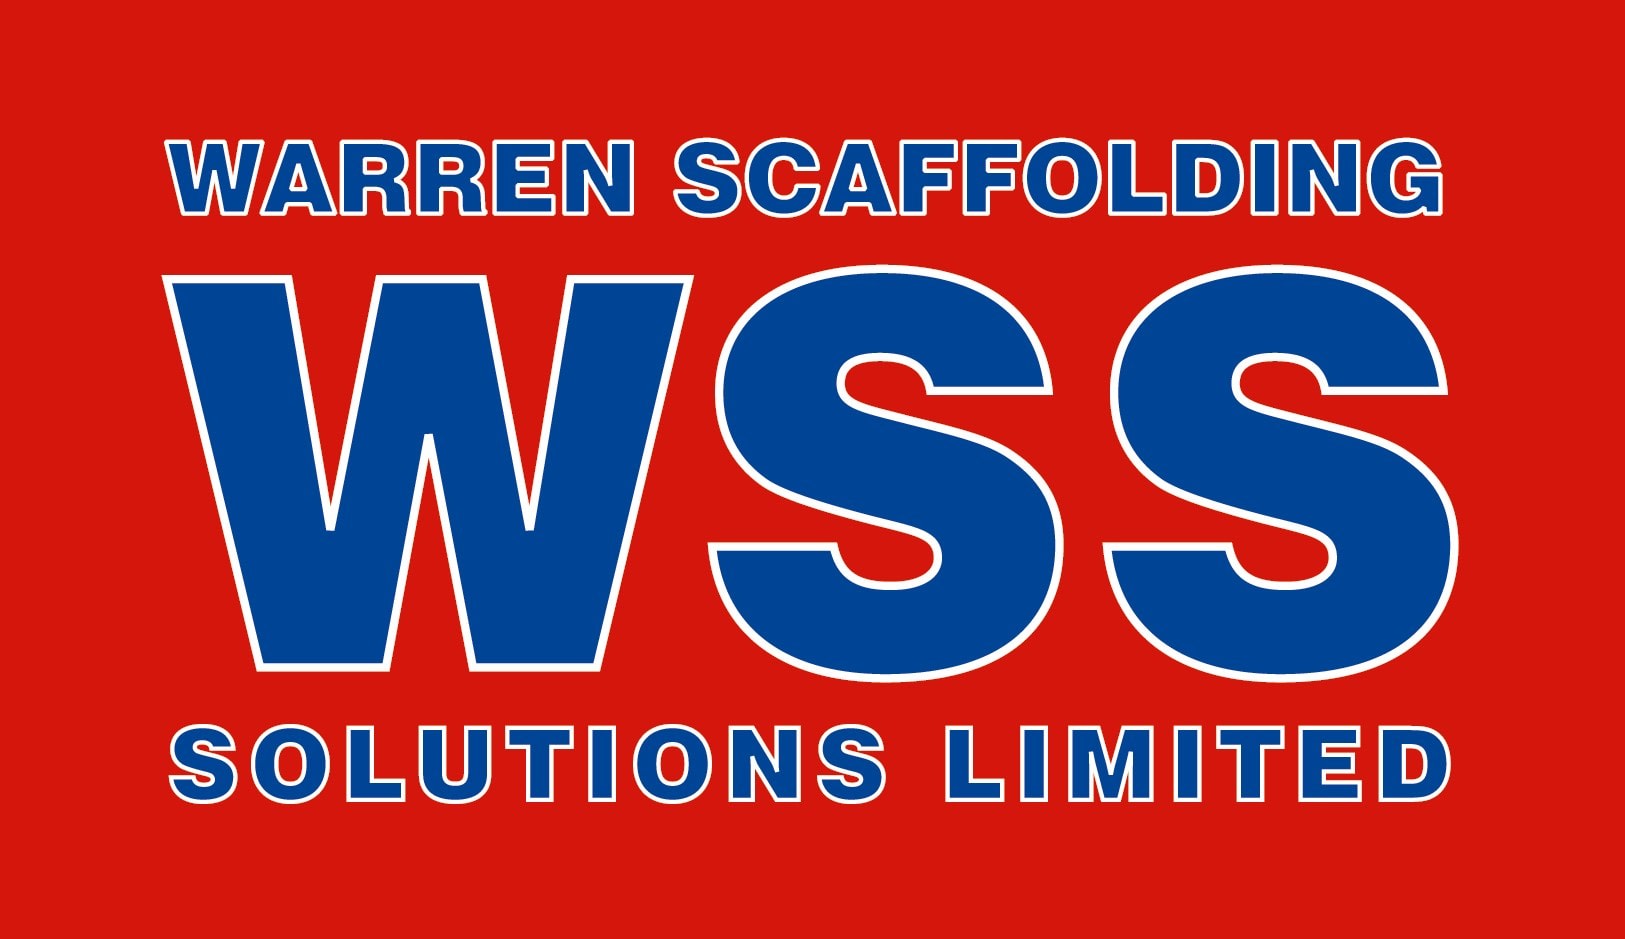 Warren Scaffolding Solutions Ltd Basingstoke 07867 544672